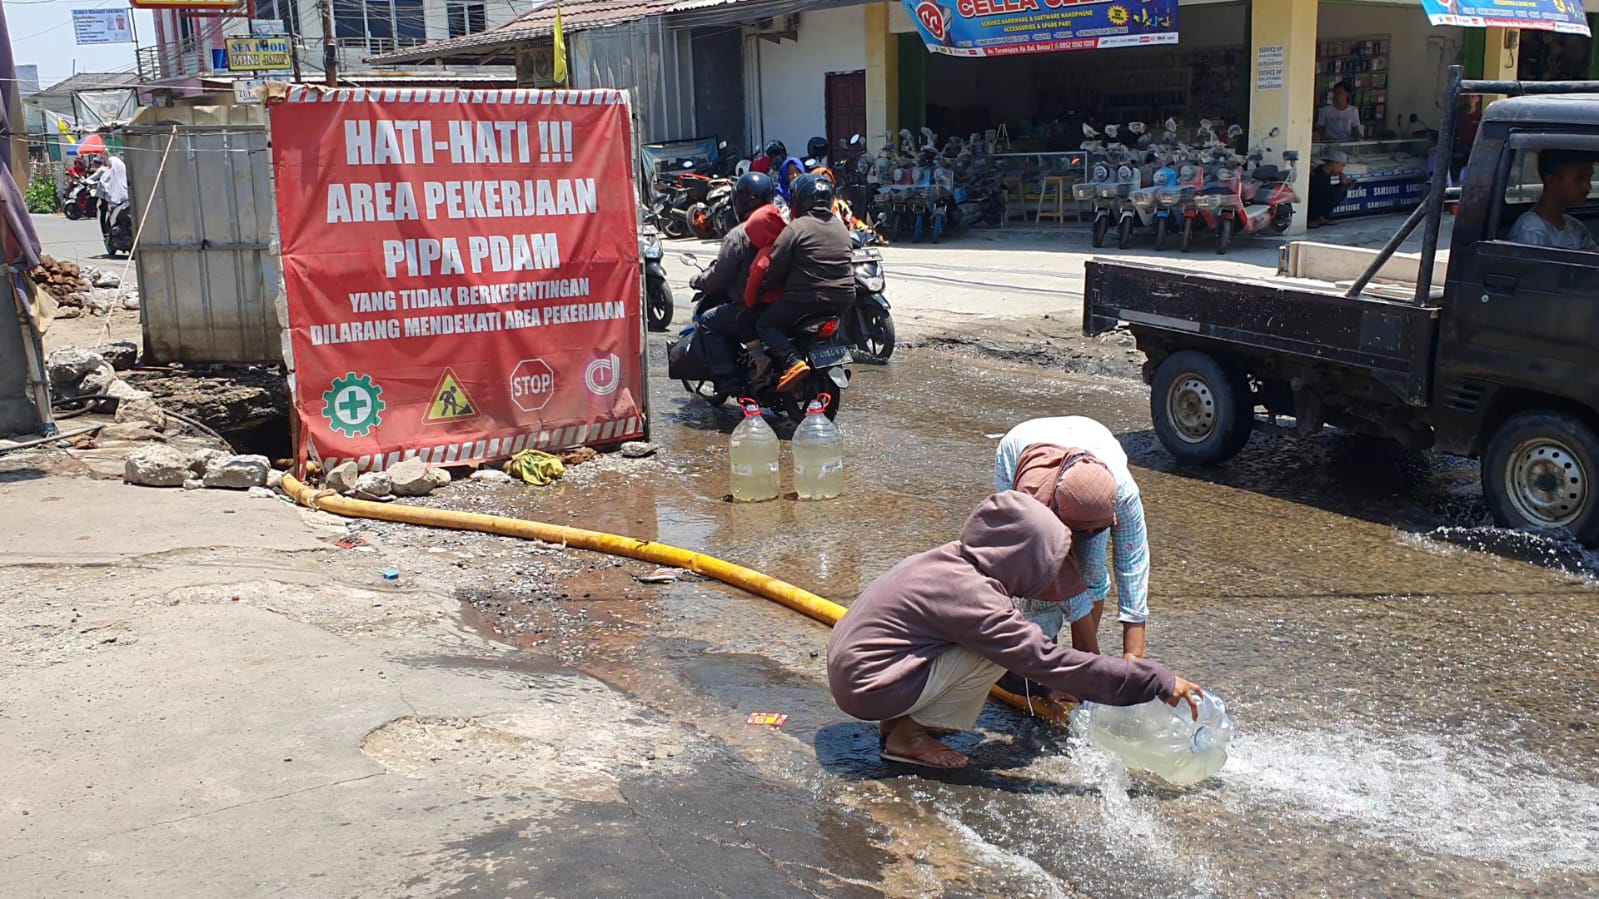 Krisis Air Bersih, Warga Tarumajaya Kabupaten Bekasi Ambil Air Dari Proyek Galian Pipa PDAM